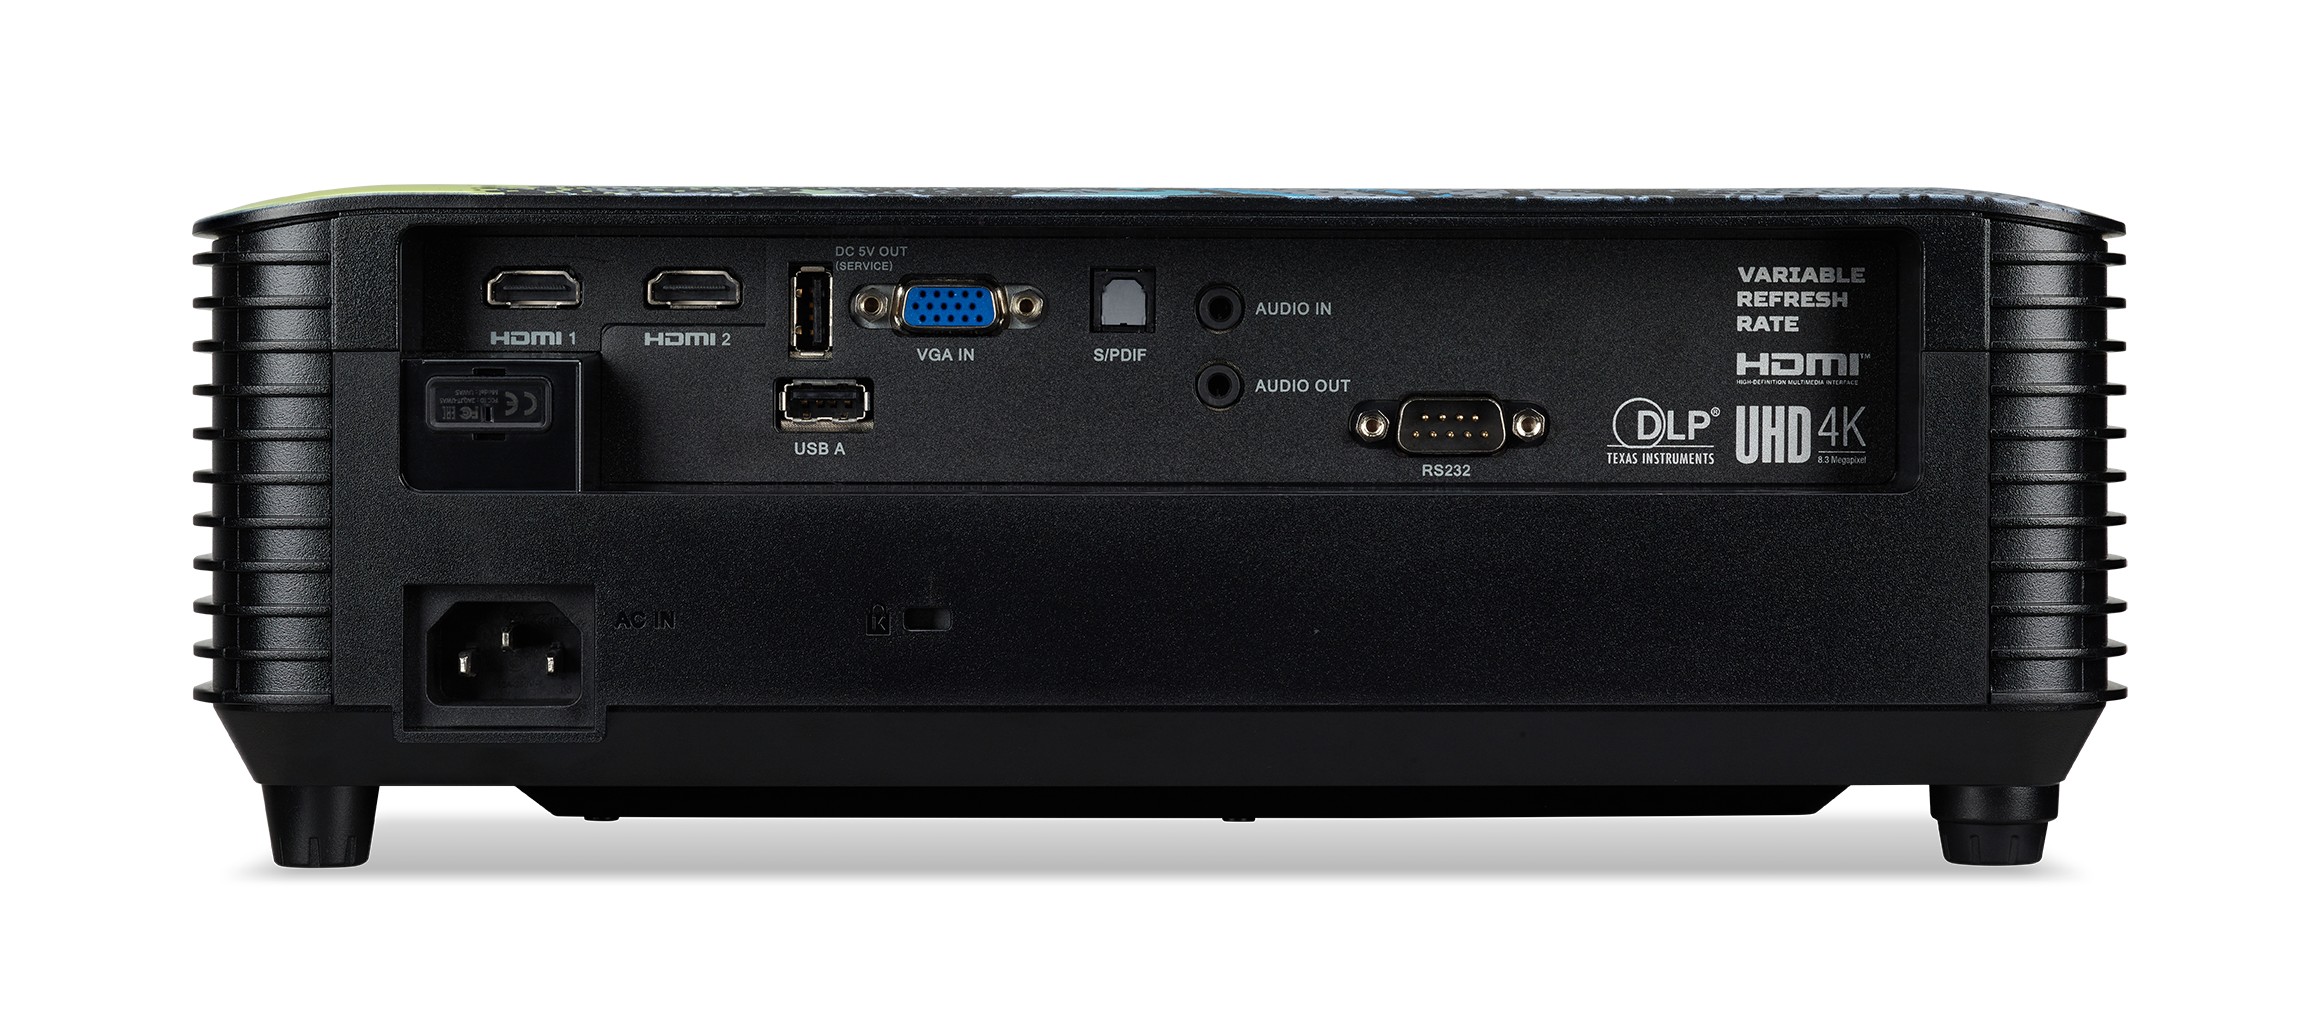 Obrázek Acer P GM712/DLP/4000lm/4K UHD/2x HDMI/LAN/WiFi